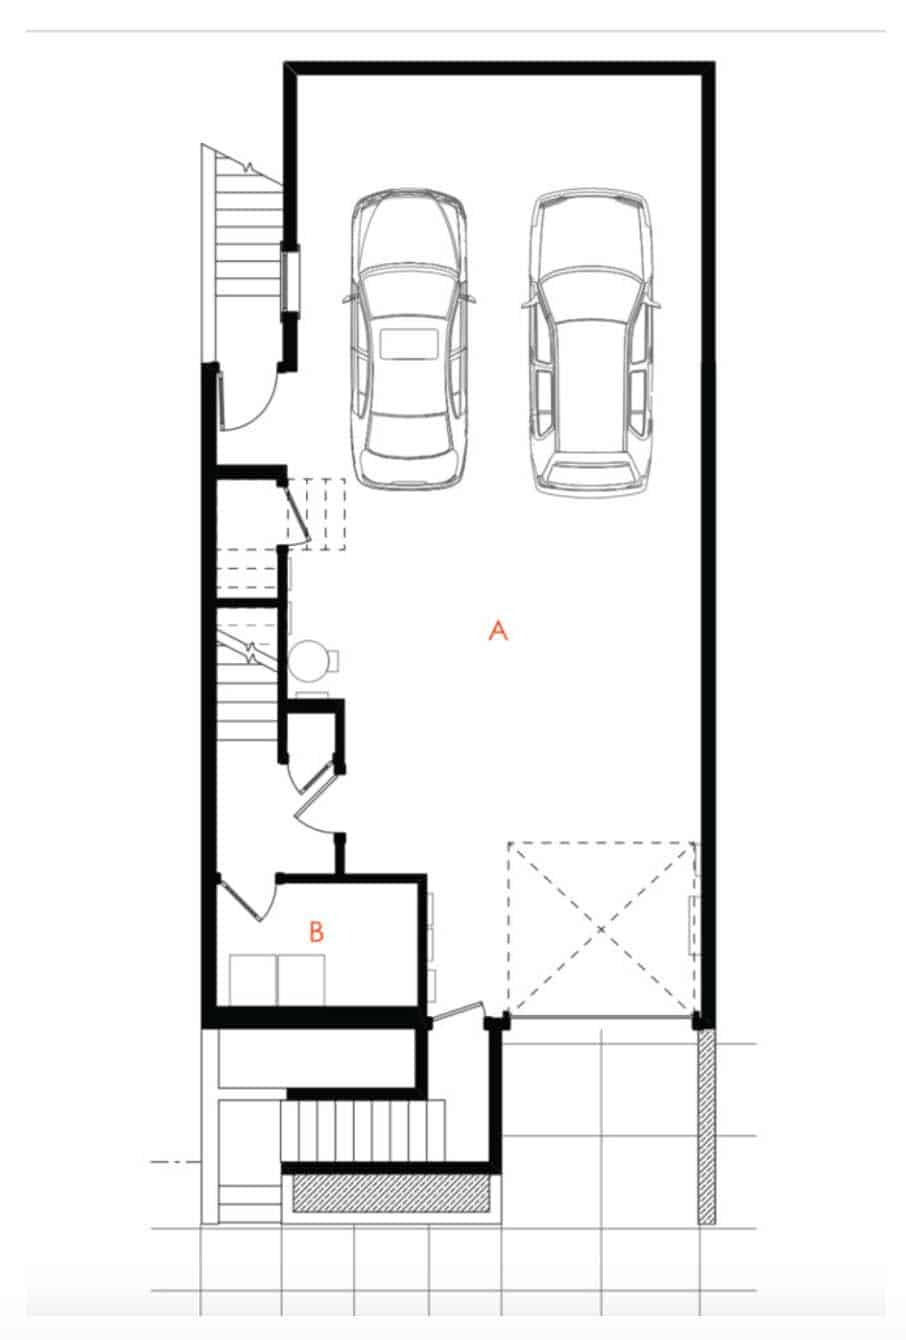 edwardian-cottage-garage-floor-plan